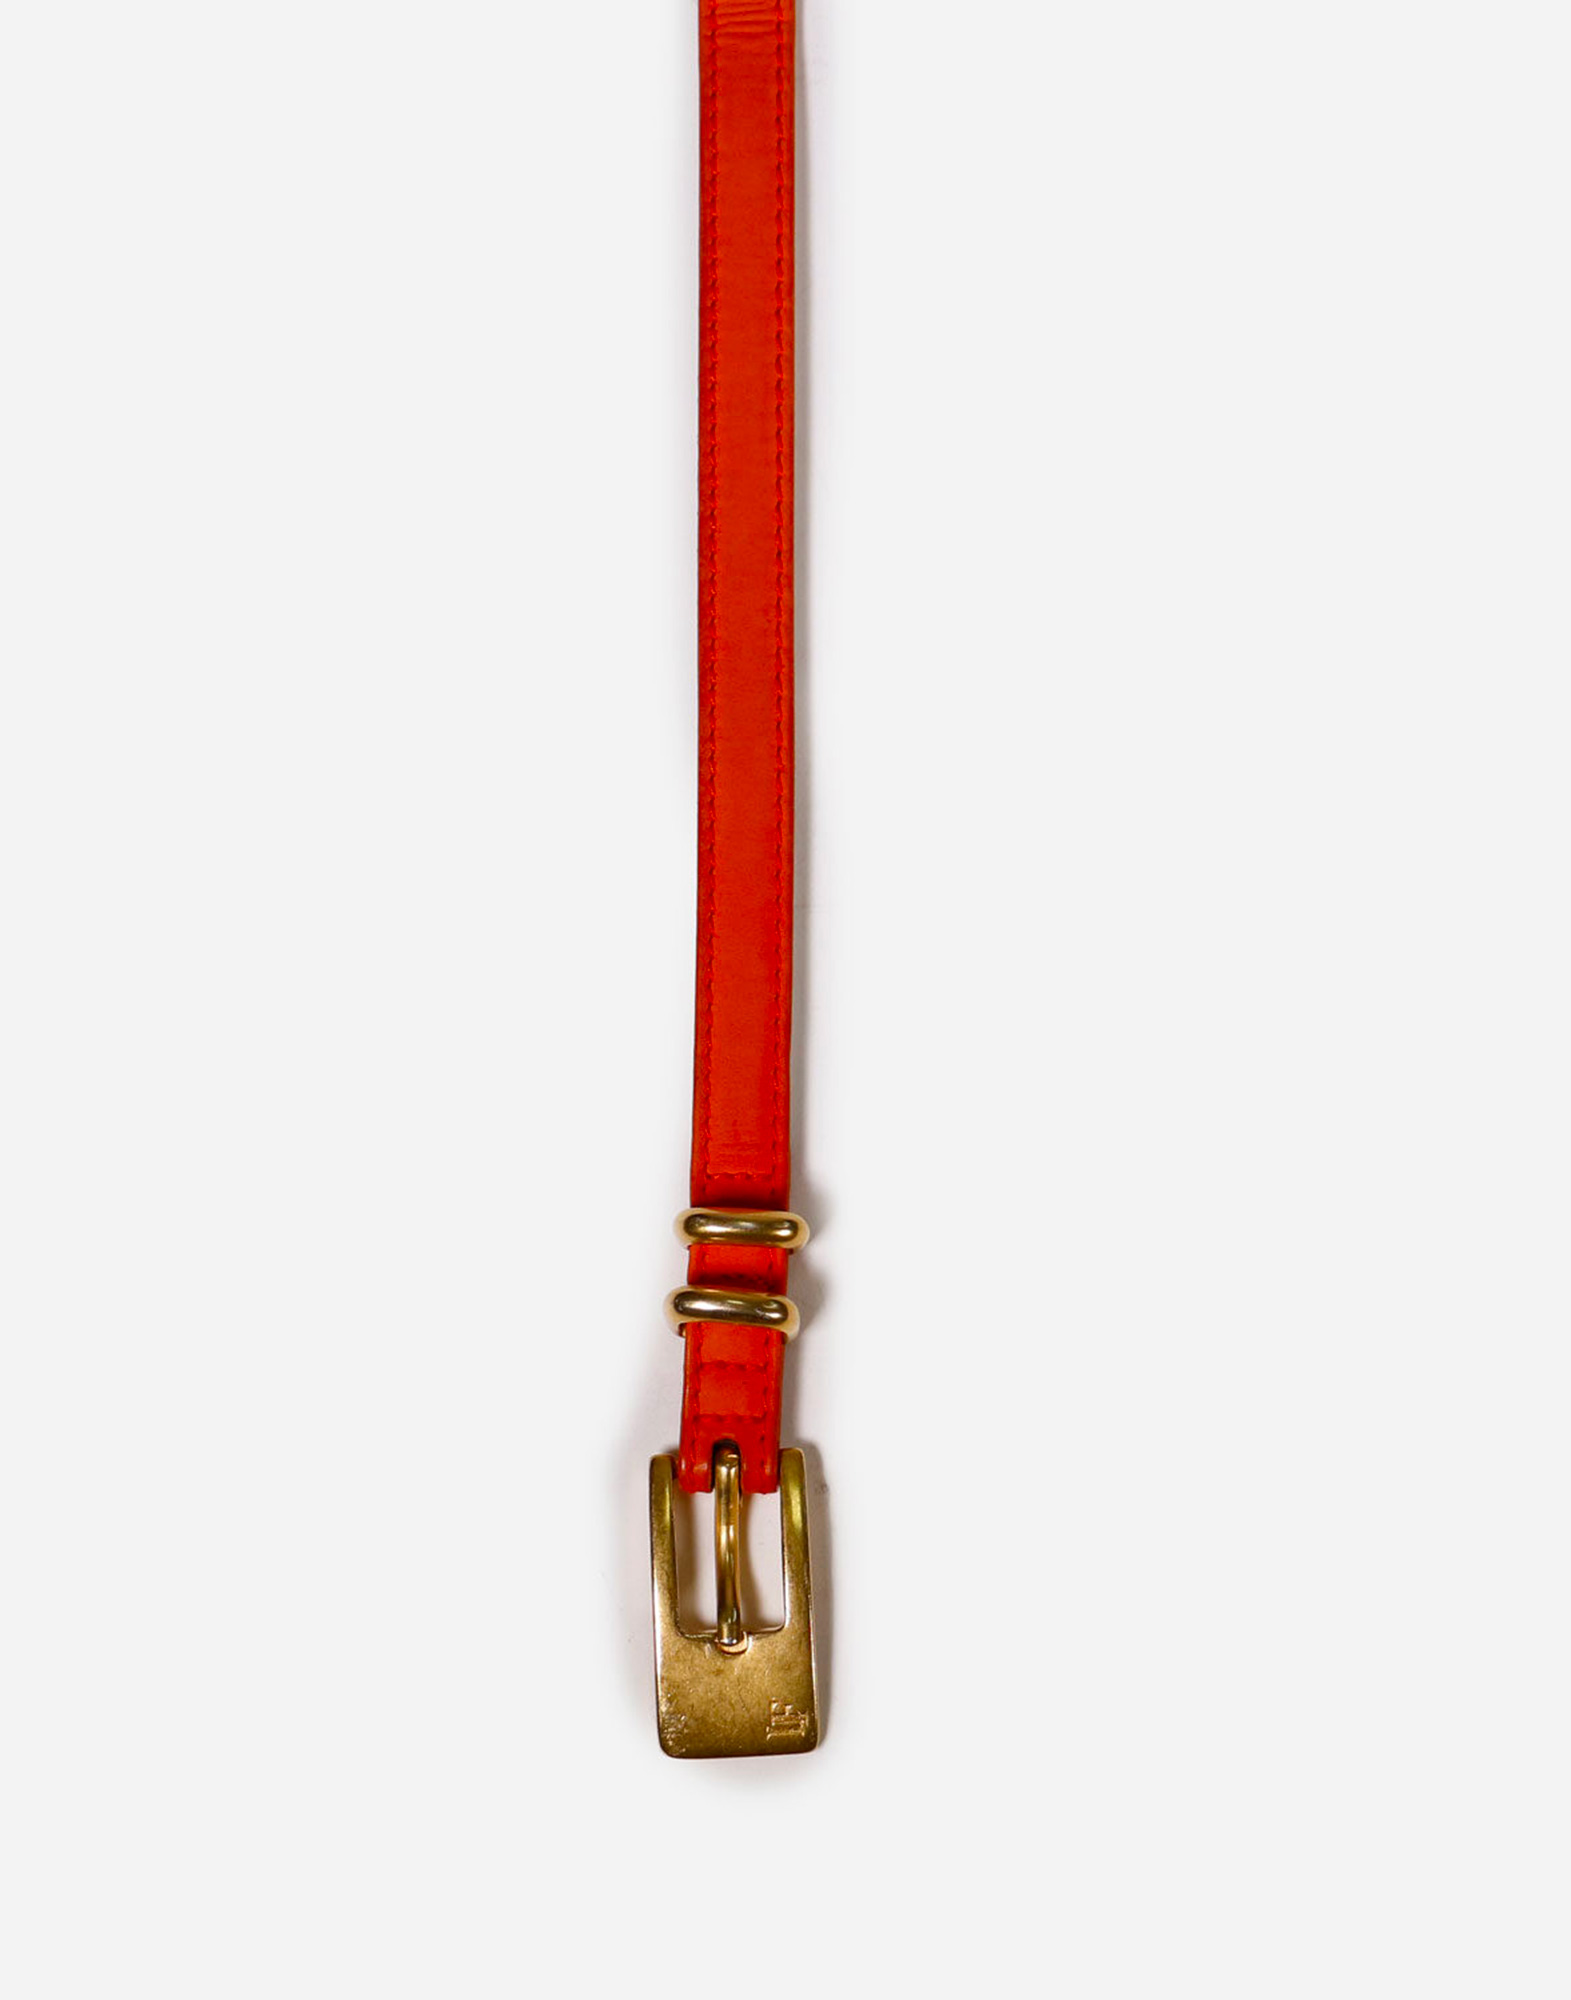 Louis Feraud - Orange belt BELTS, WOMEN'S SALES - Shop Millesimè Collection